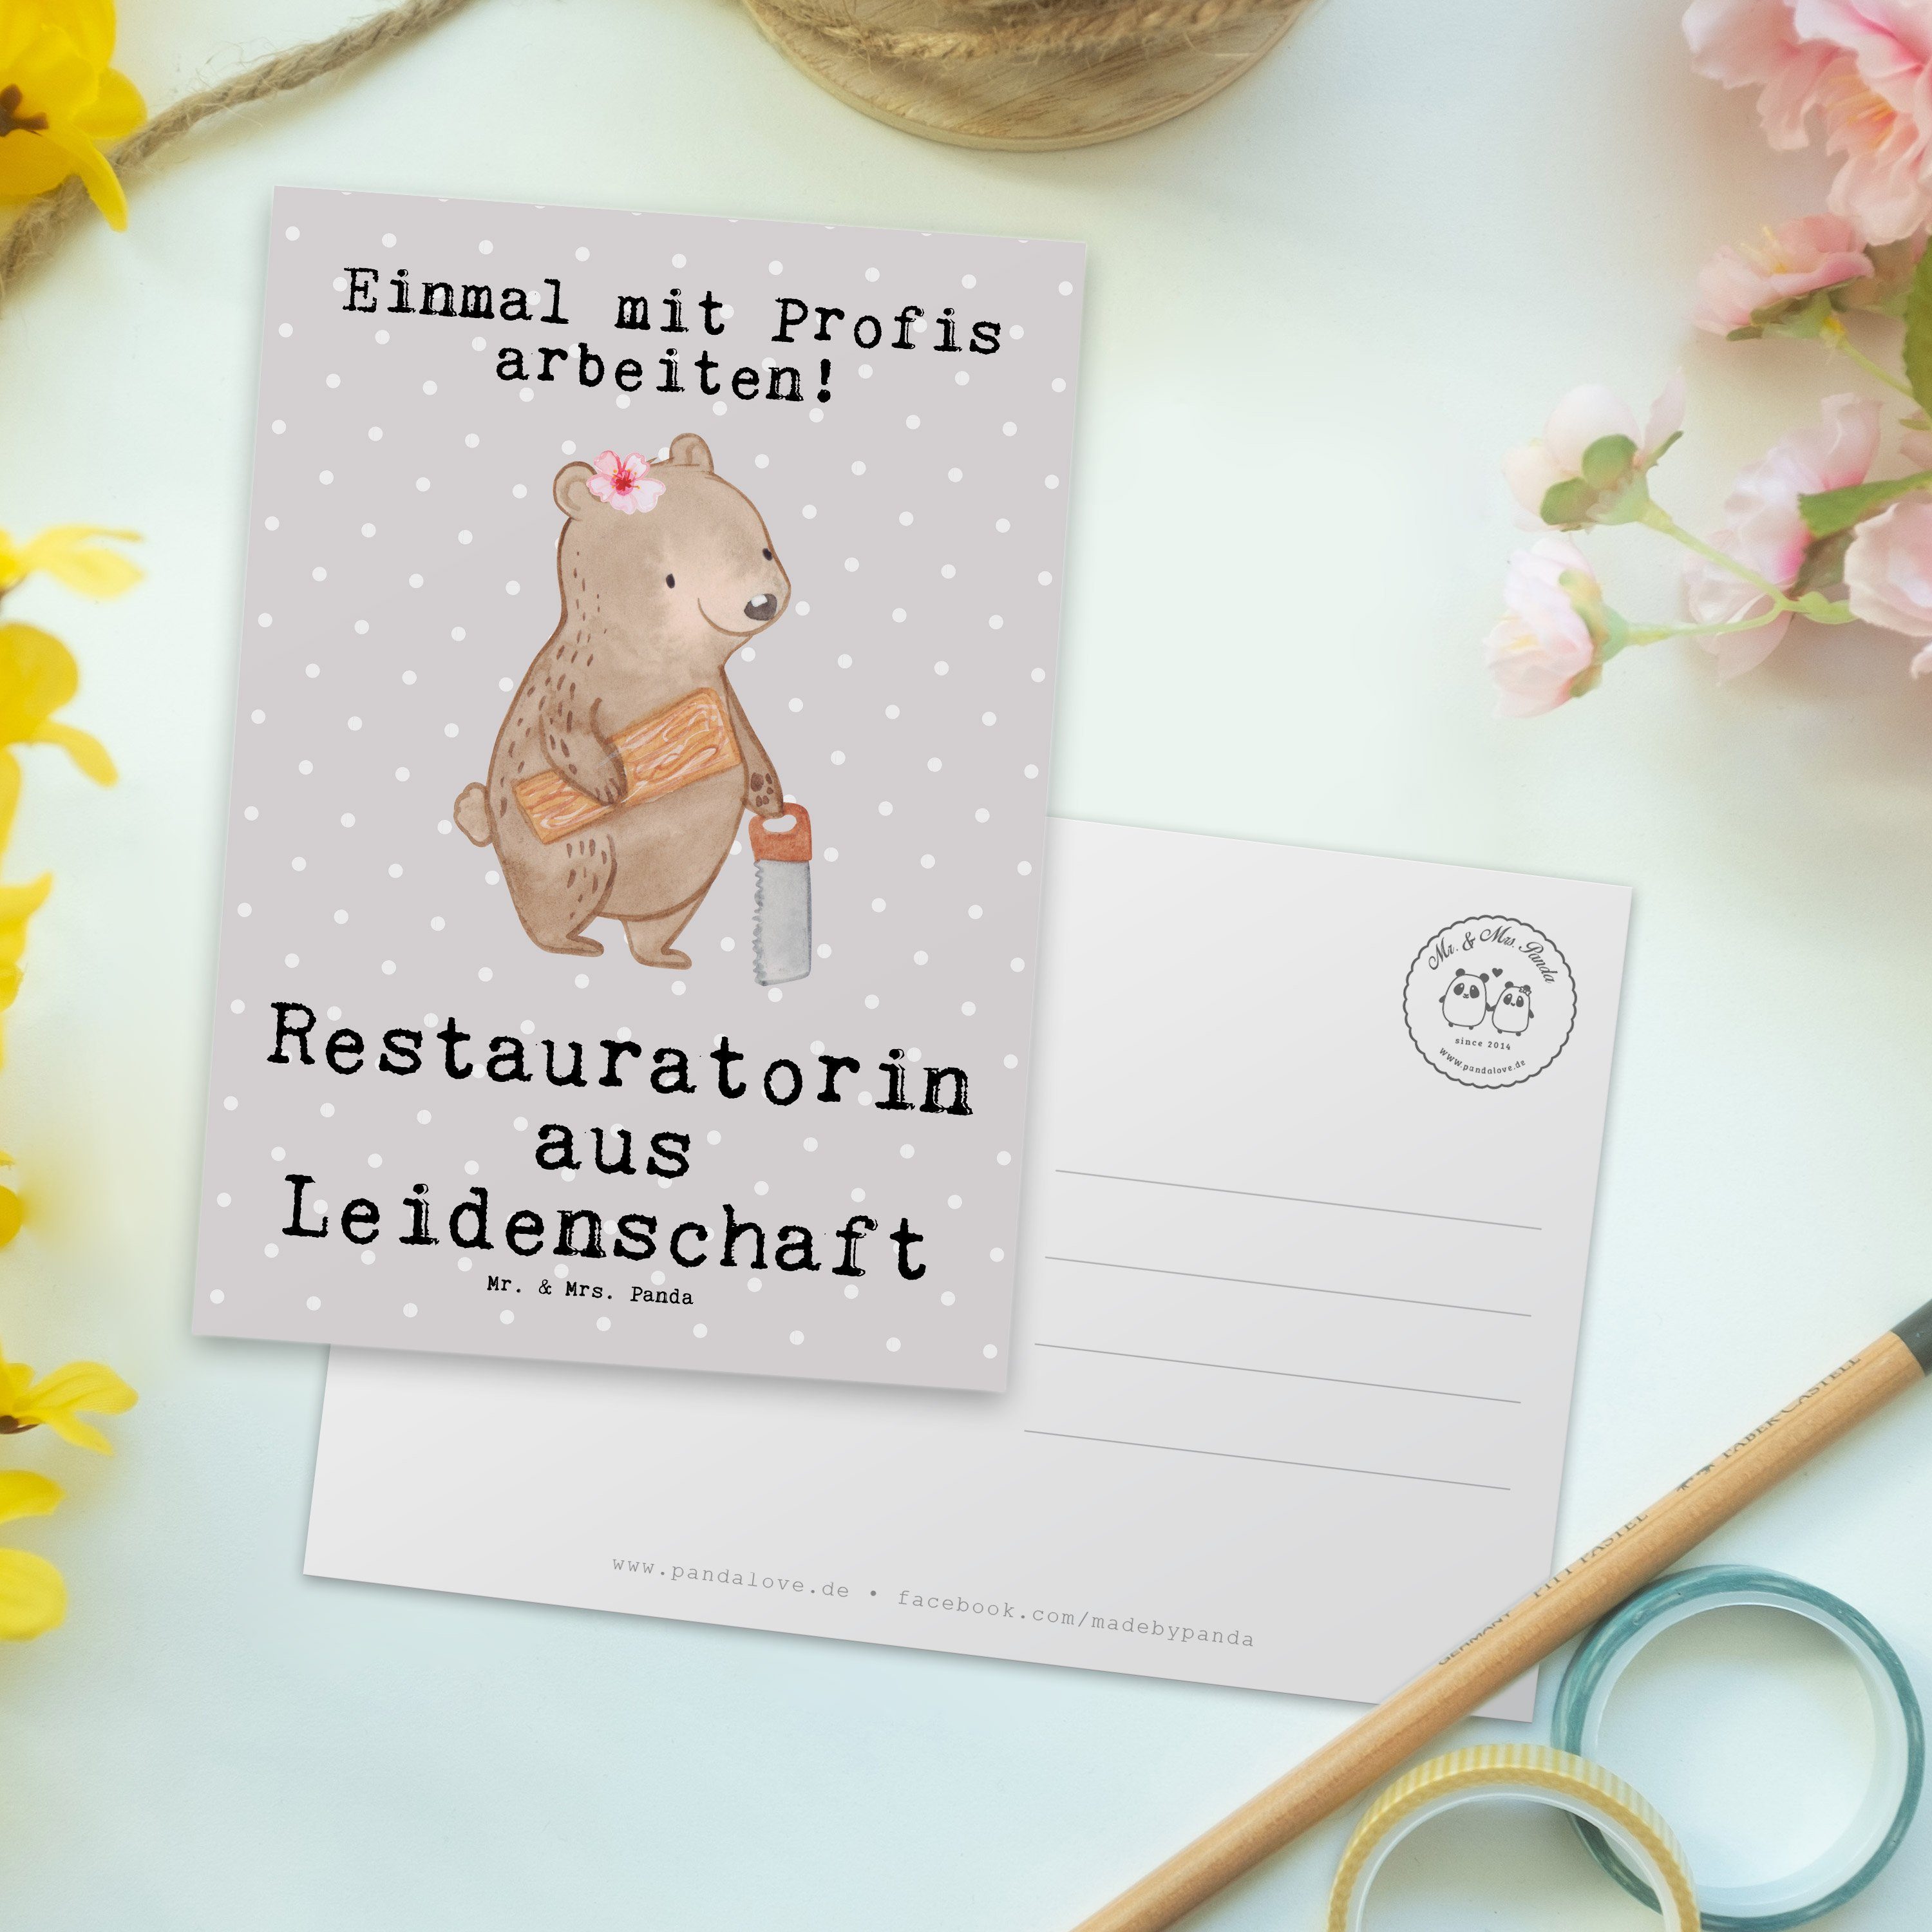 & Grau Pastell - Mr. Panda Geschenkkar Mrs. aus Restauratorin - Geschenk, Postkarte Leidenschaft